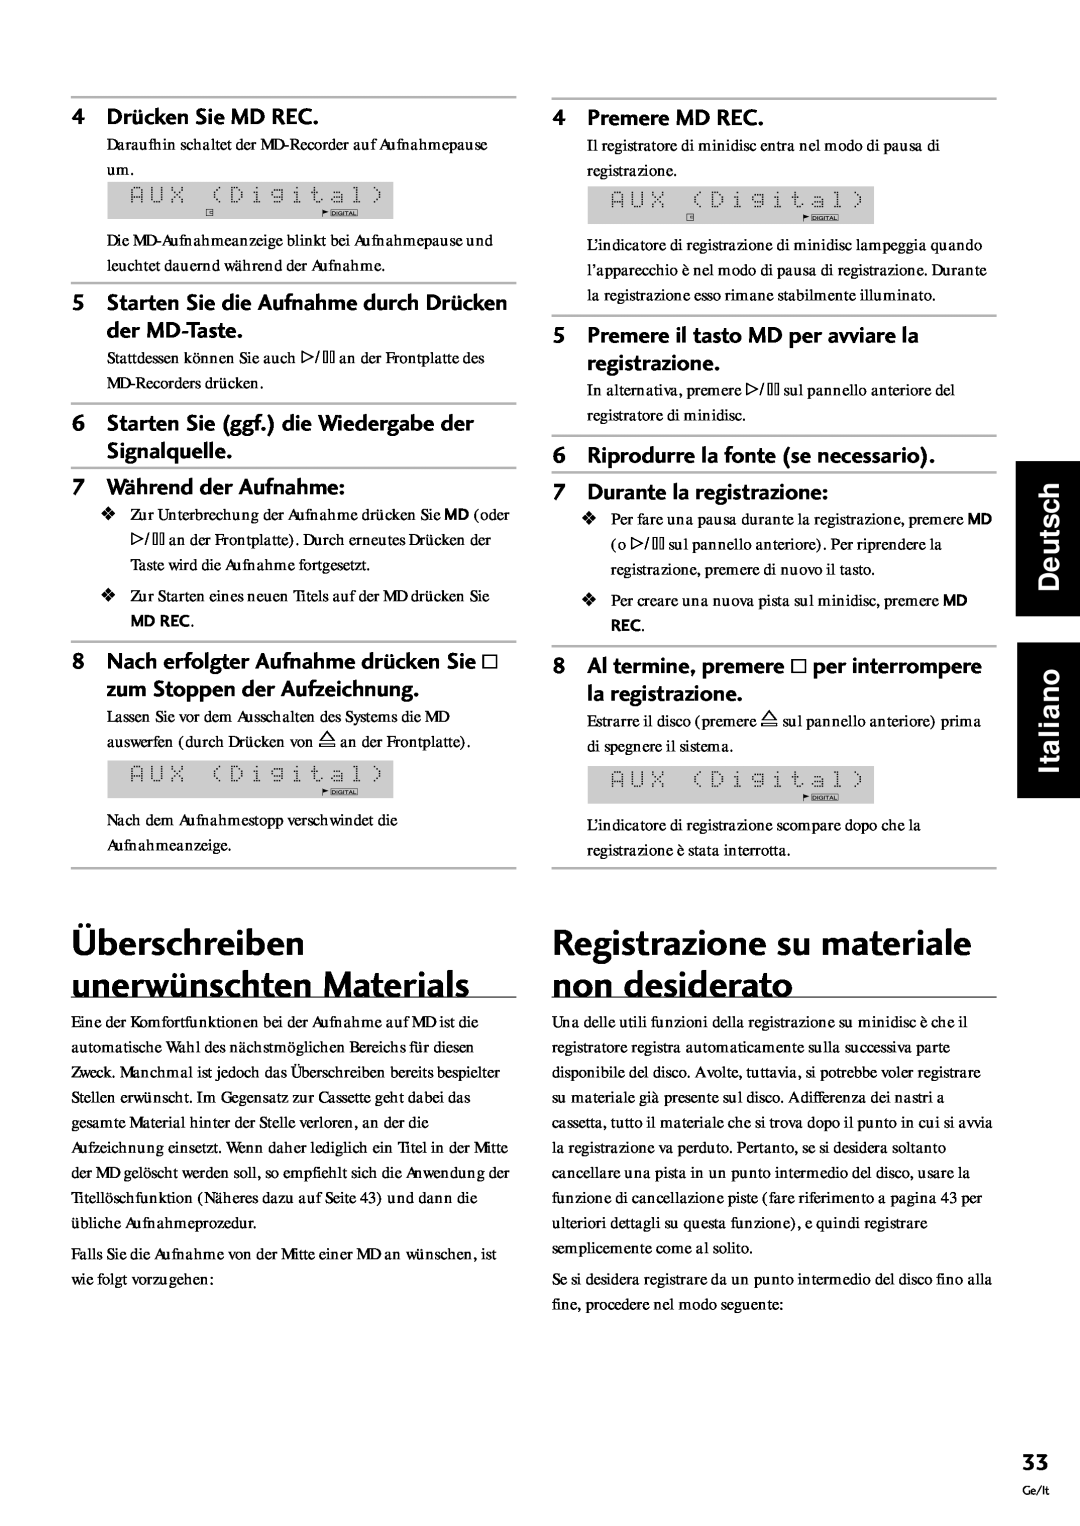 Pioneer MJ-L77 †berschreiben unerwŸnschten Materials, Registrazione su materiale non desiderato, Italiano Deutsch 